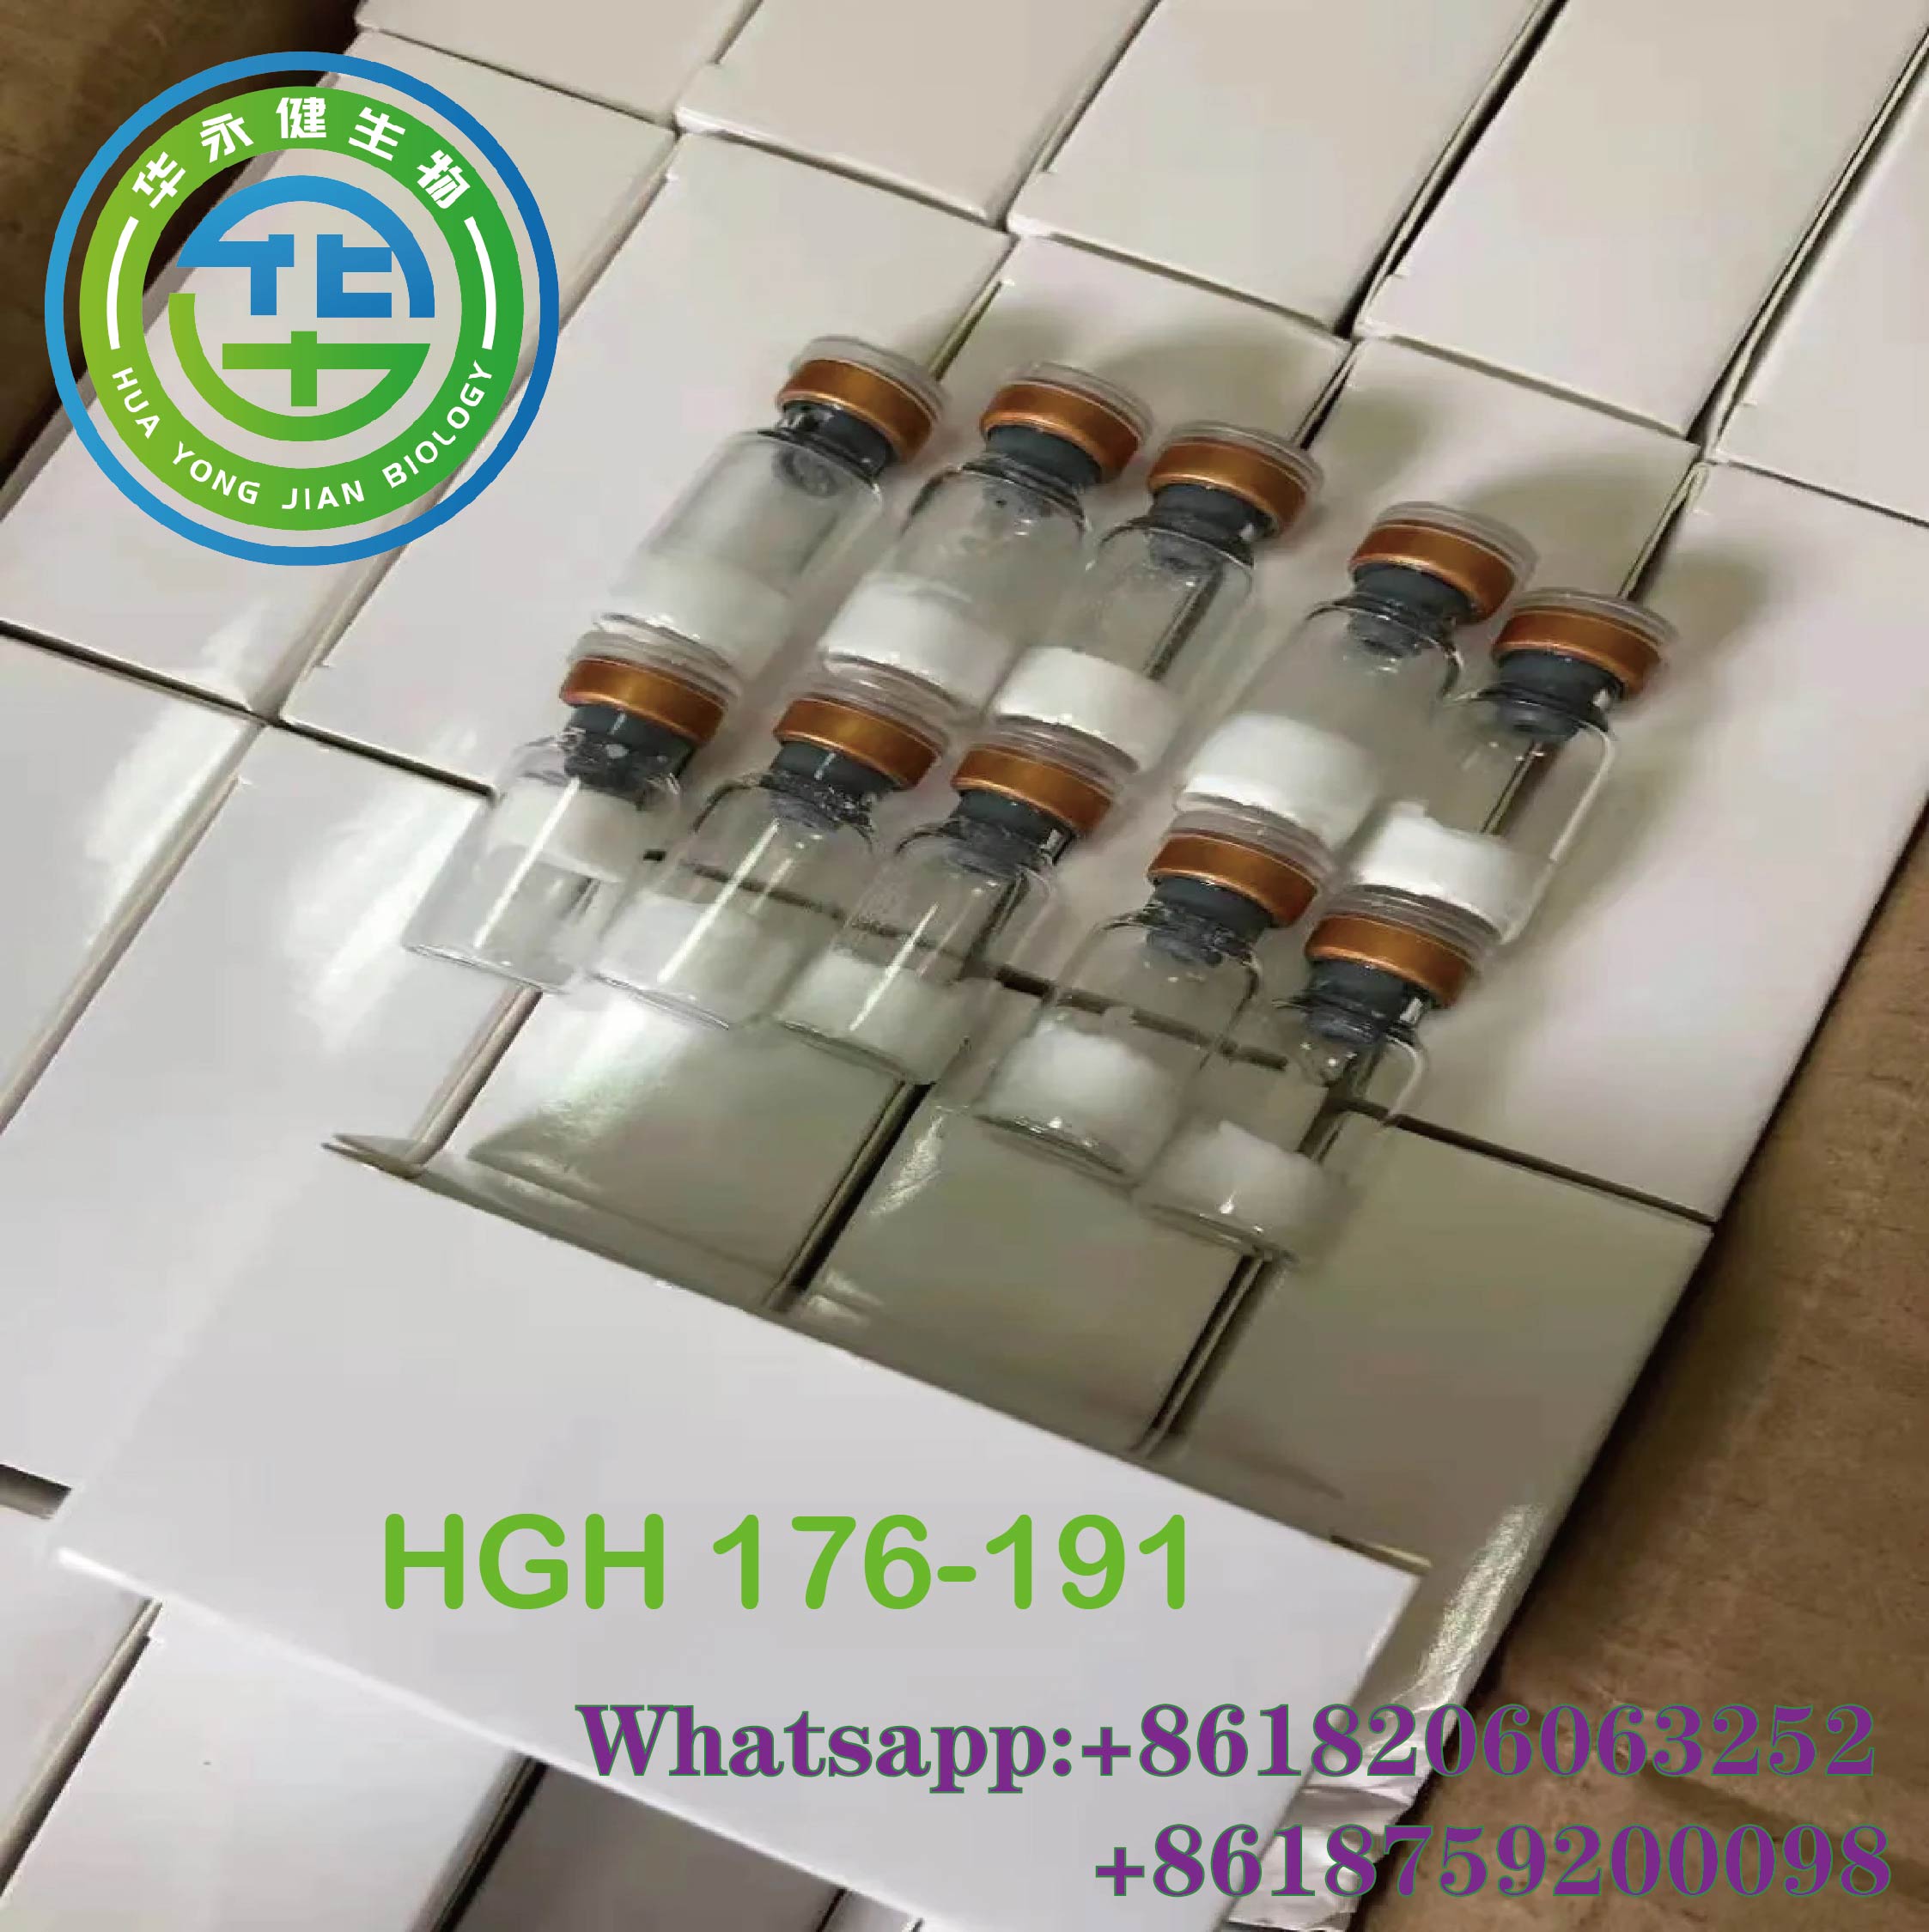 Pagwala sa Timbang HGH Human Growth Hormone HGH 176-191 Gipili nga Hulagway